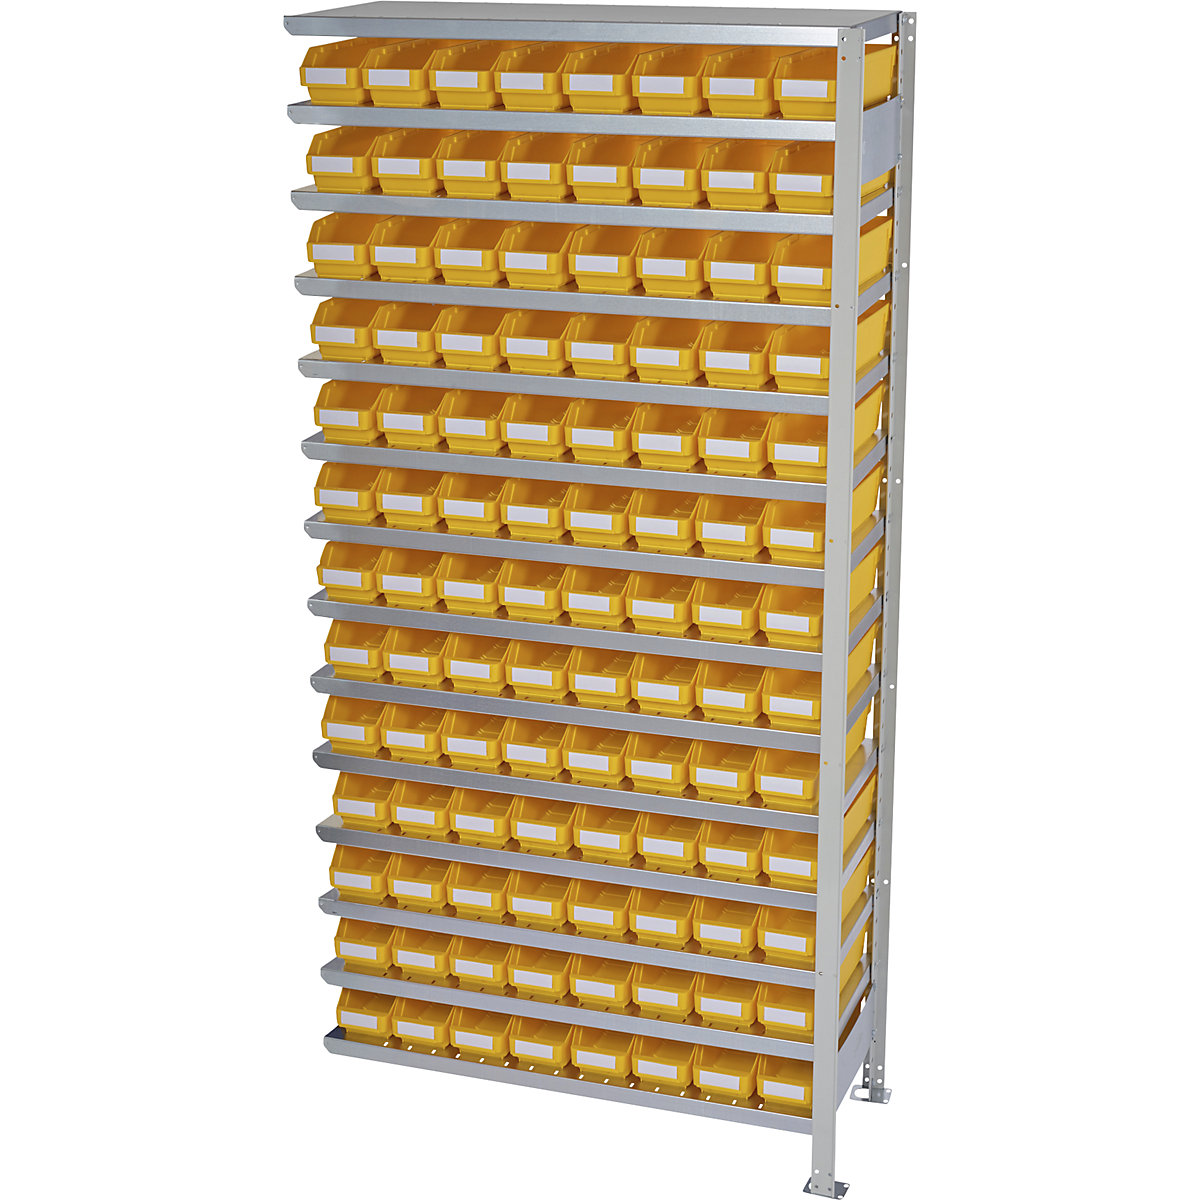 Összedugaszolós állvány dobozokkal – STEMO, állványmagasság 2100 mm, bővítő állvány, 300 mm mély, 104 sárga doboz-14